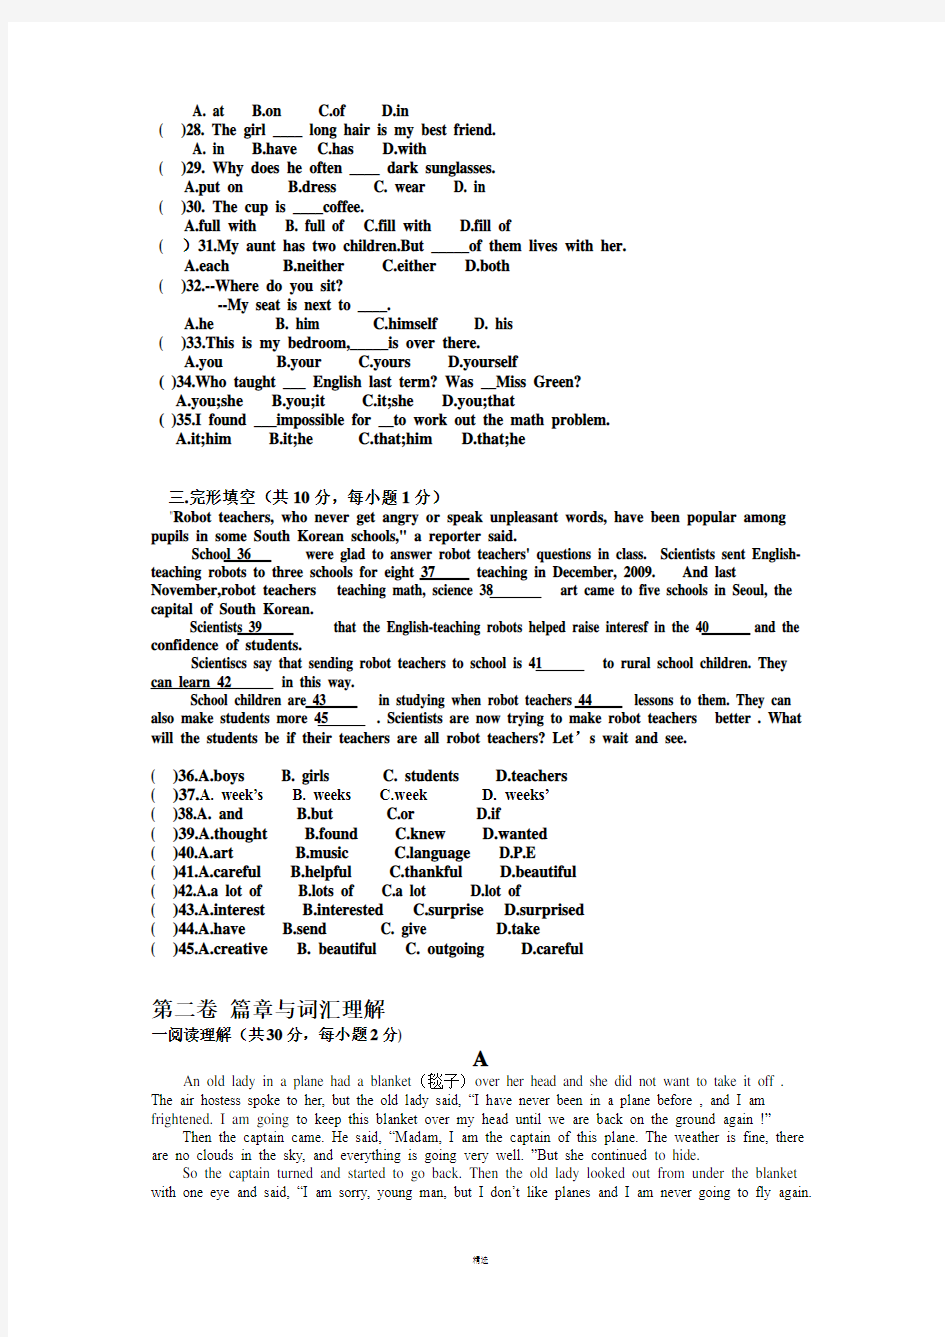 英语基础模块上册英语知识运用1,2单元考试题